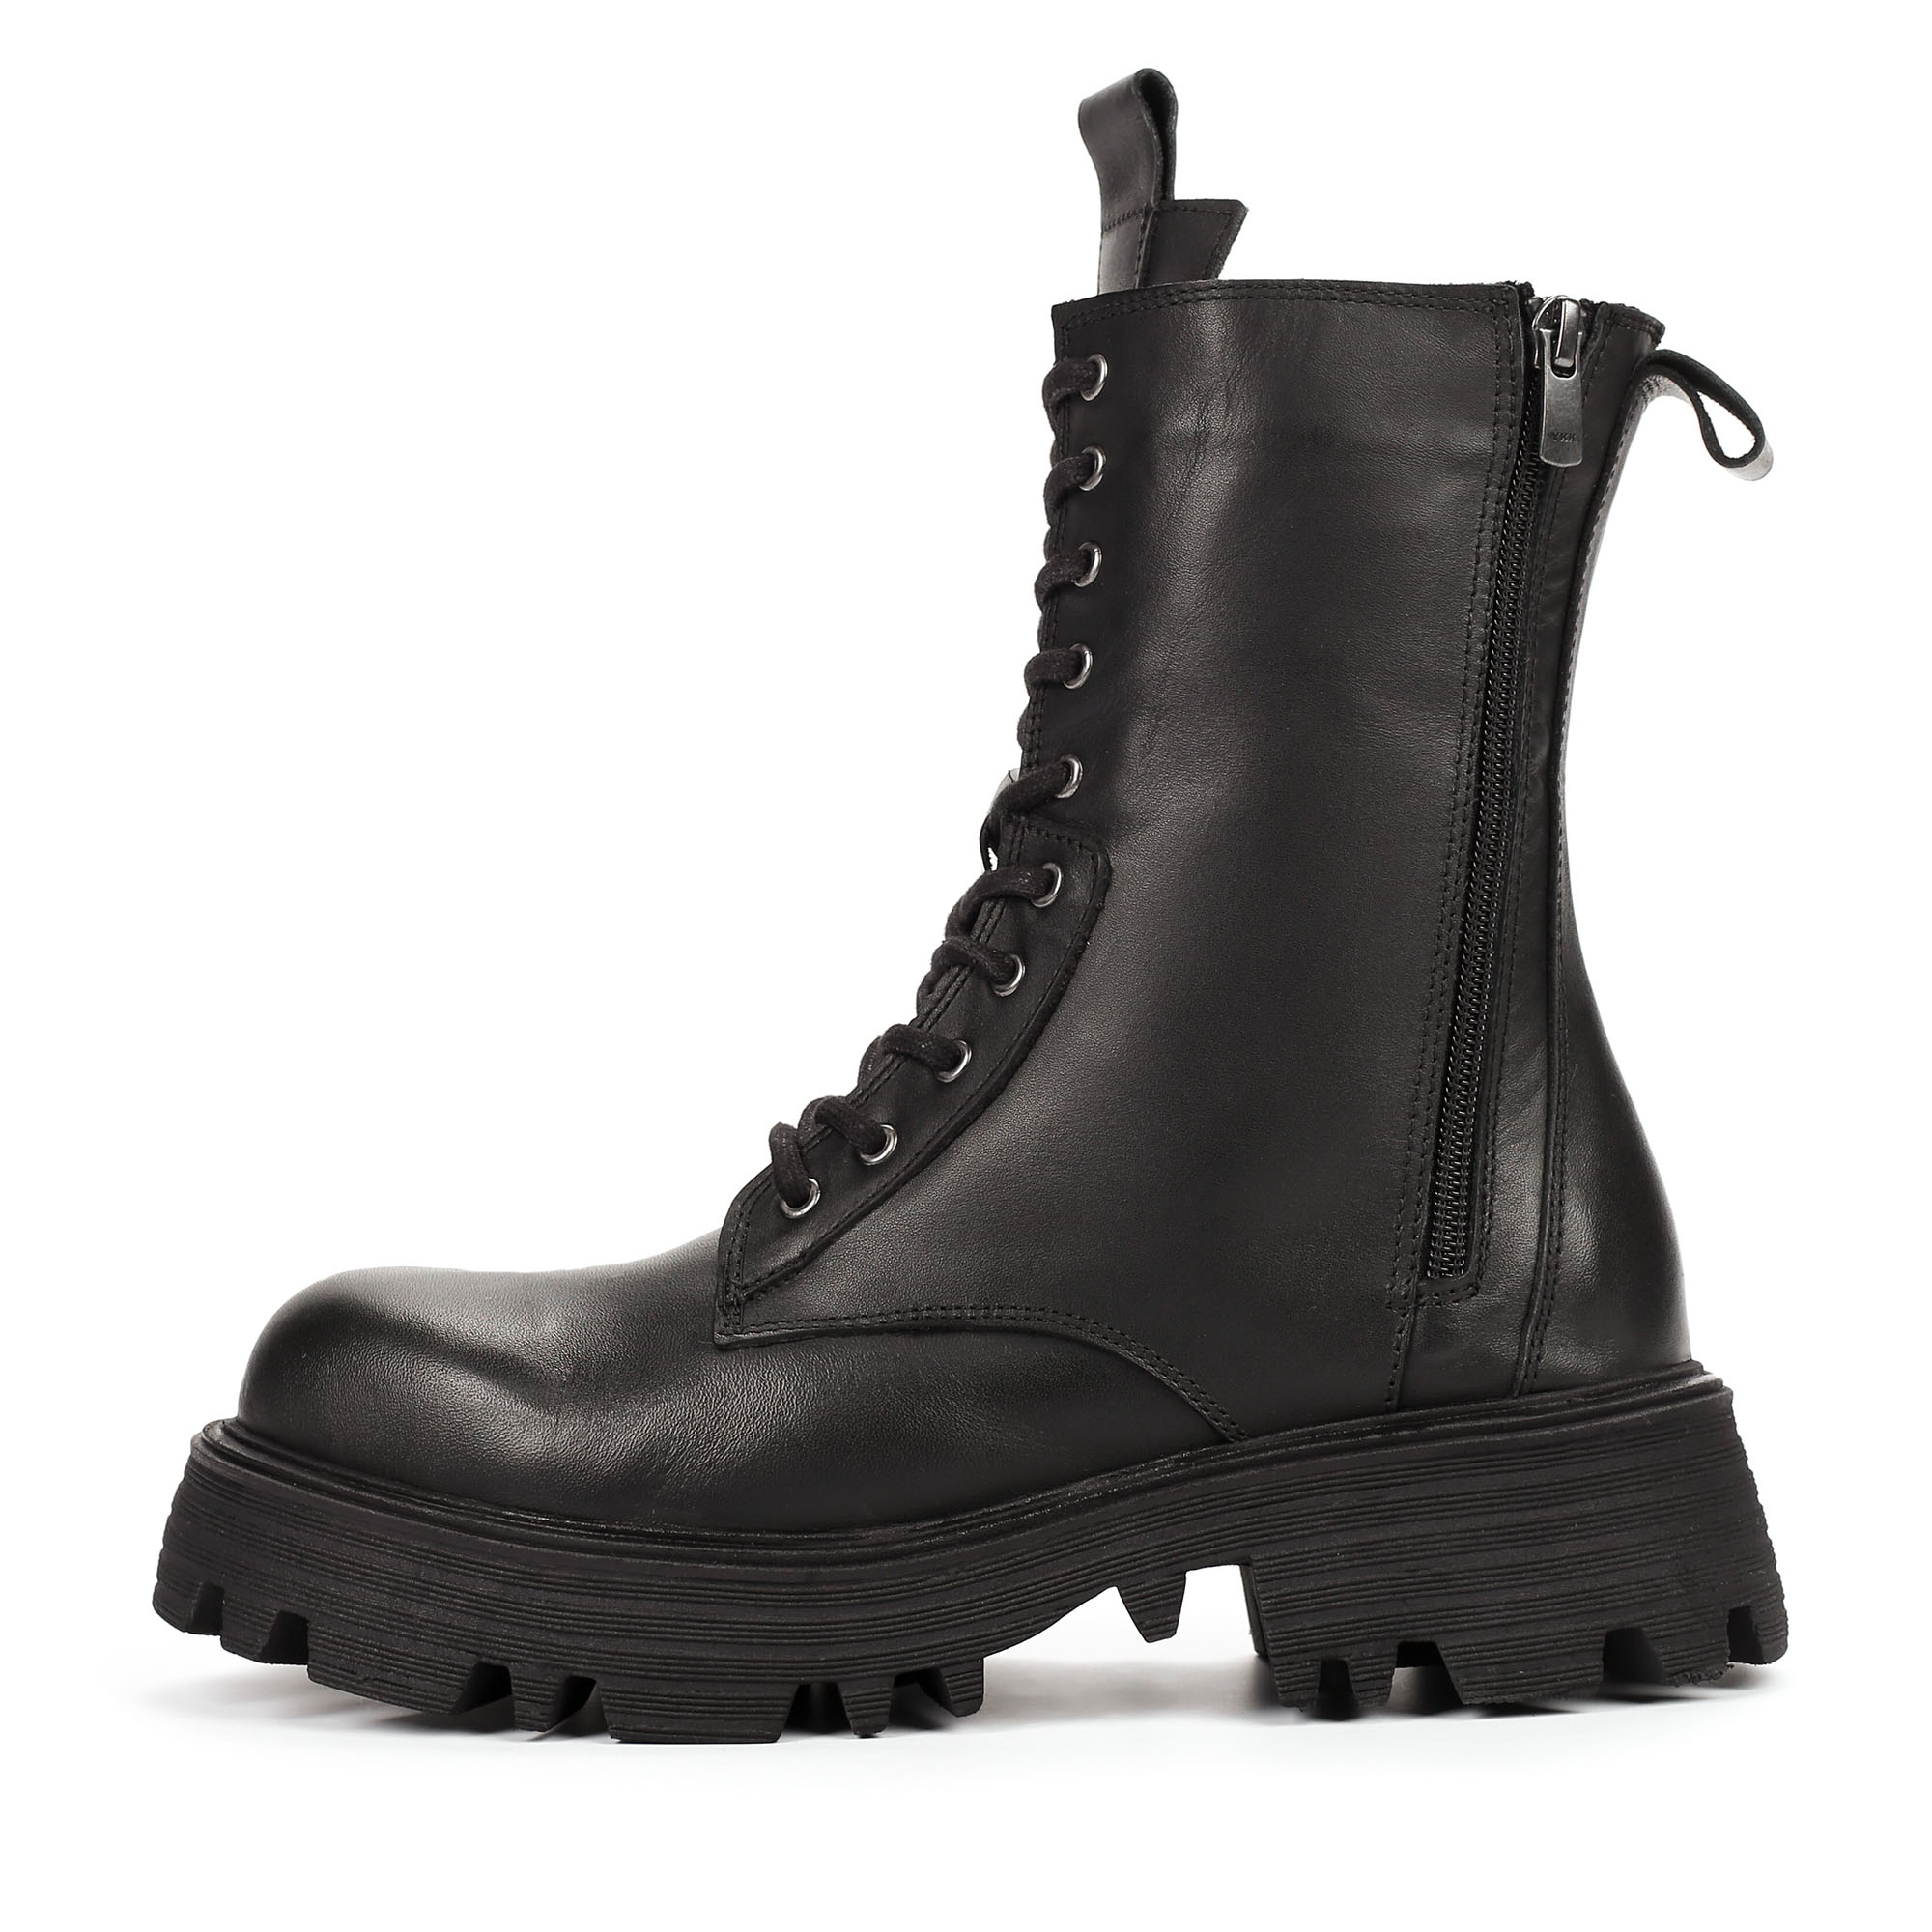 Ботинки Thomas Munz 506-178A-2102, цвет черный, размер 41